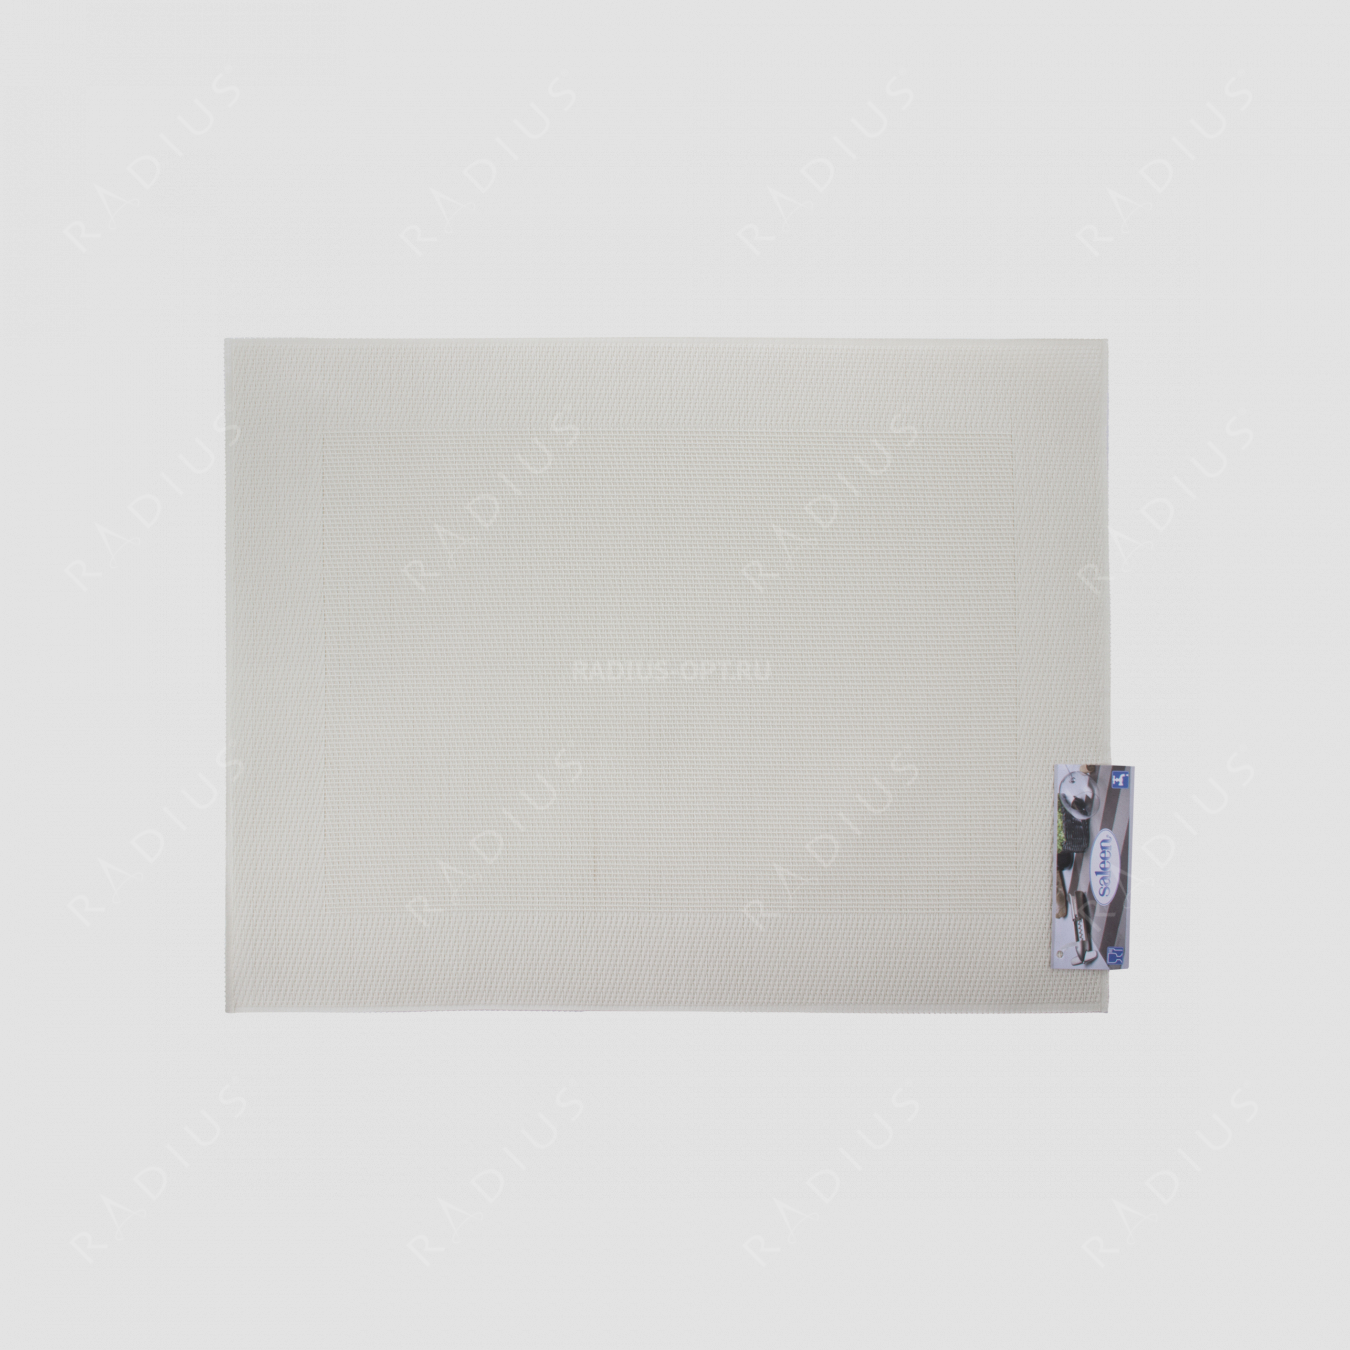 Салфетка подстановочная, 42х32 см, цвет кремовый, Rahmen, серия Saleen, Westmark, Германия